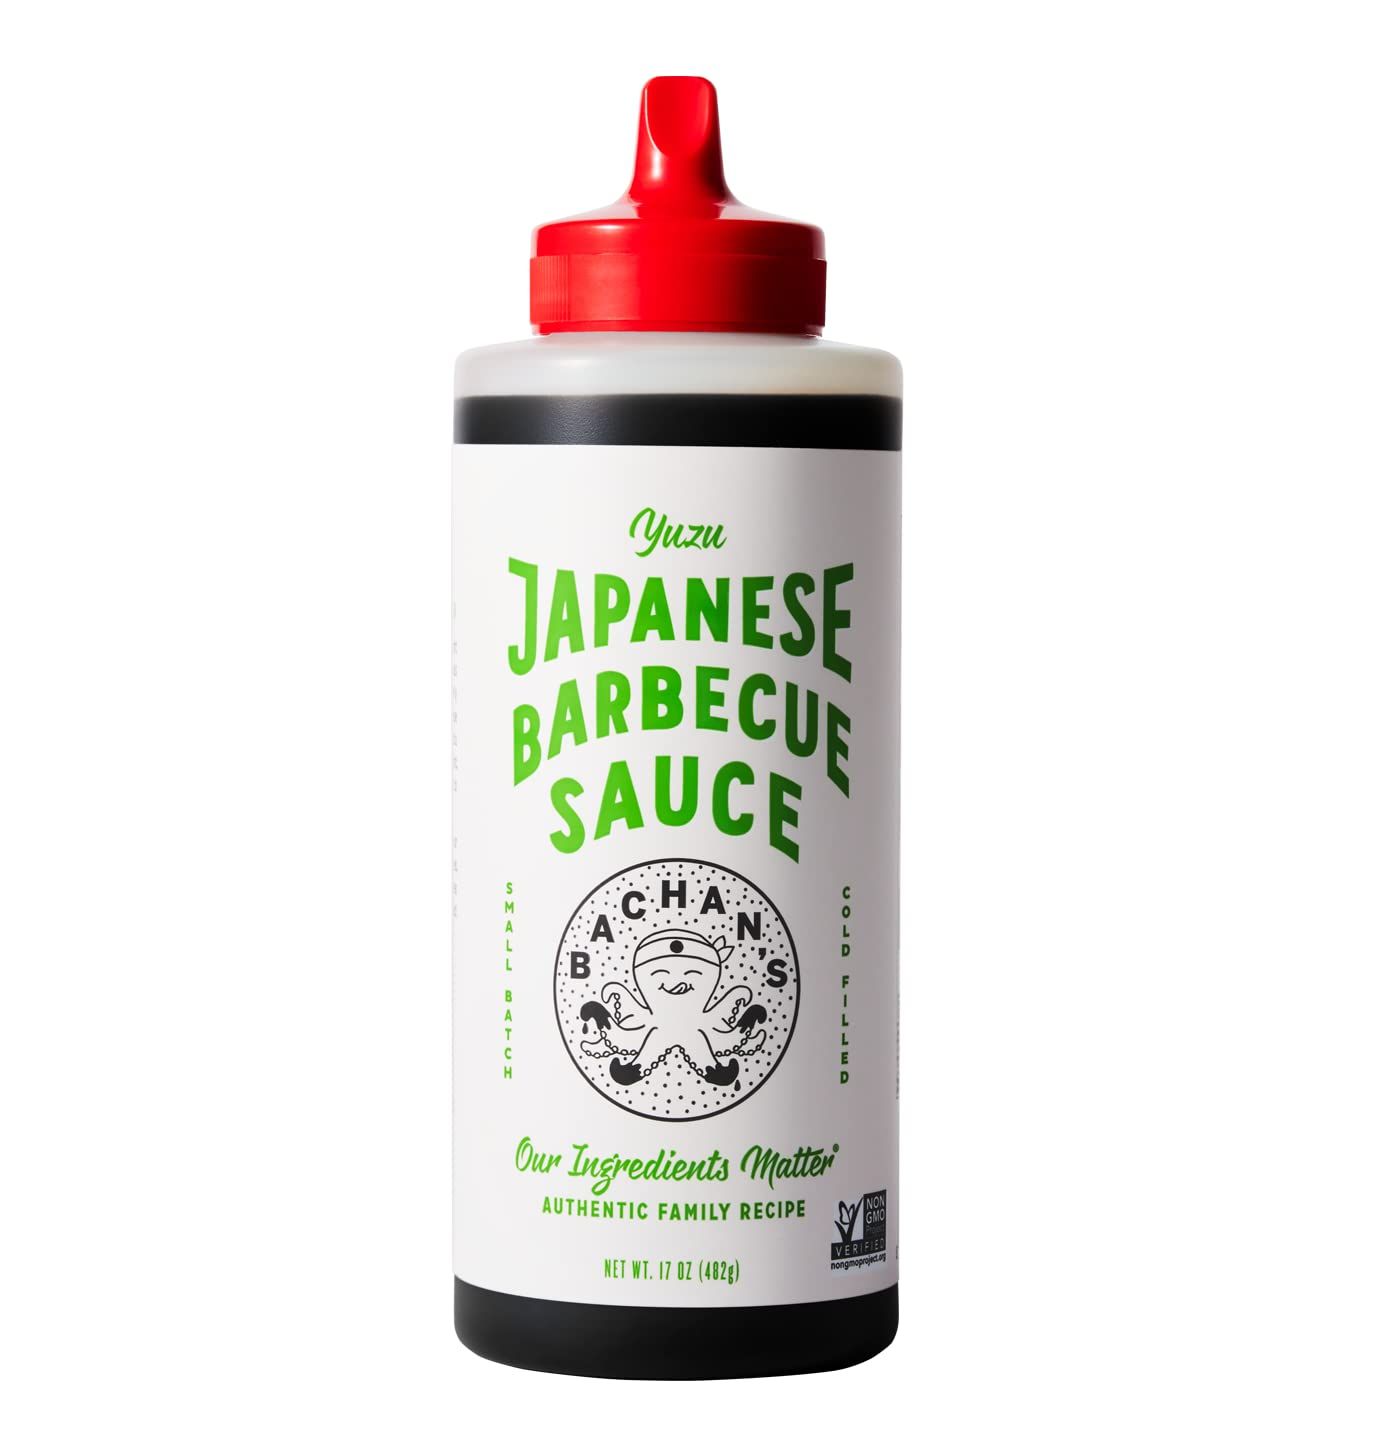 Bachan's - The Original Japanese Barbecue Sauce - Yuzu, 17 Ounces. Small Batch, Non GMO, No Prese... | Amazon (US)